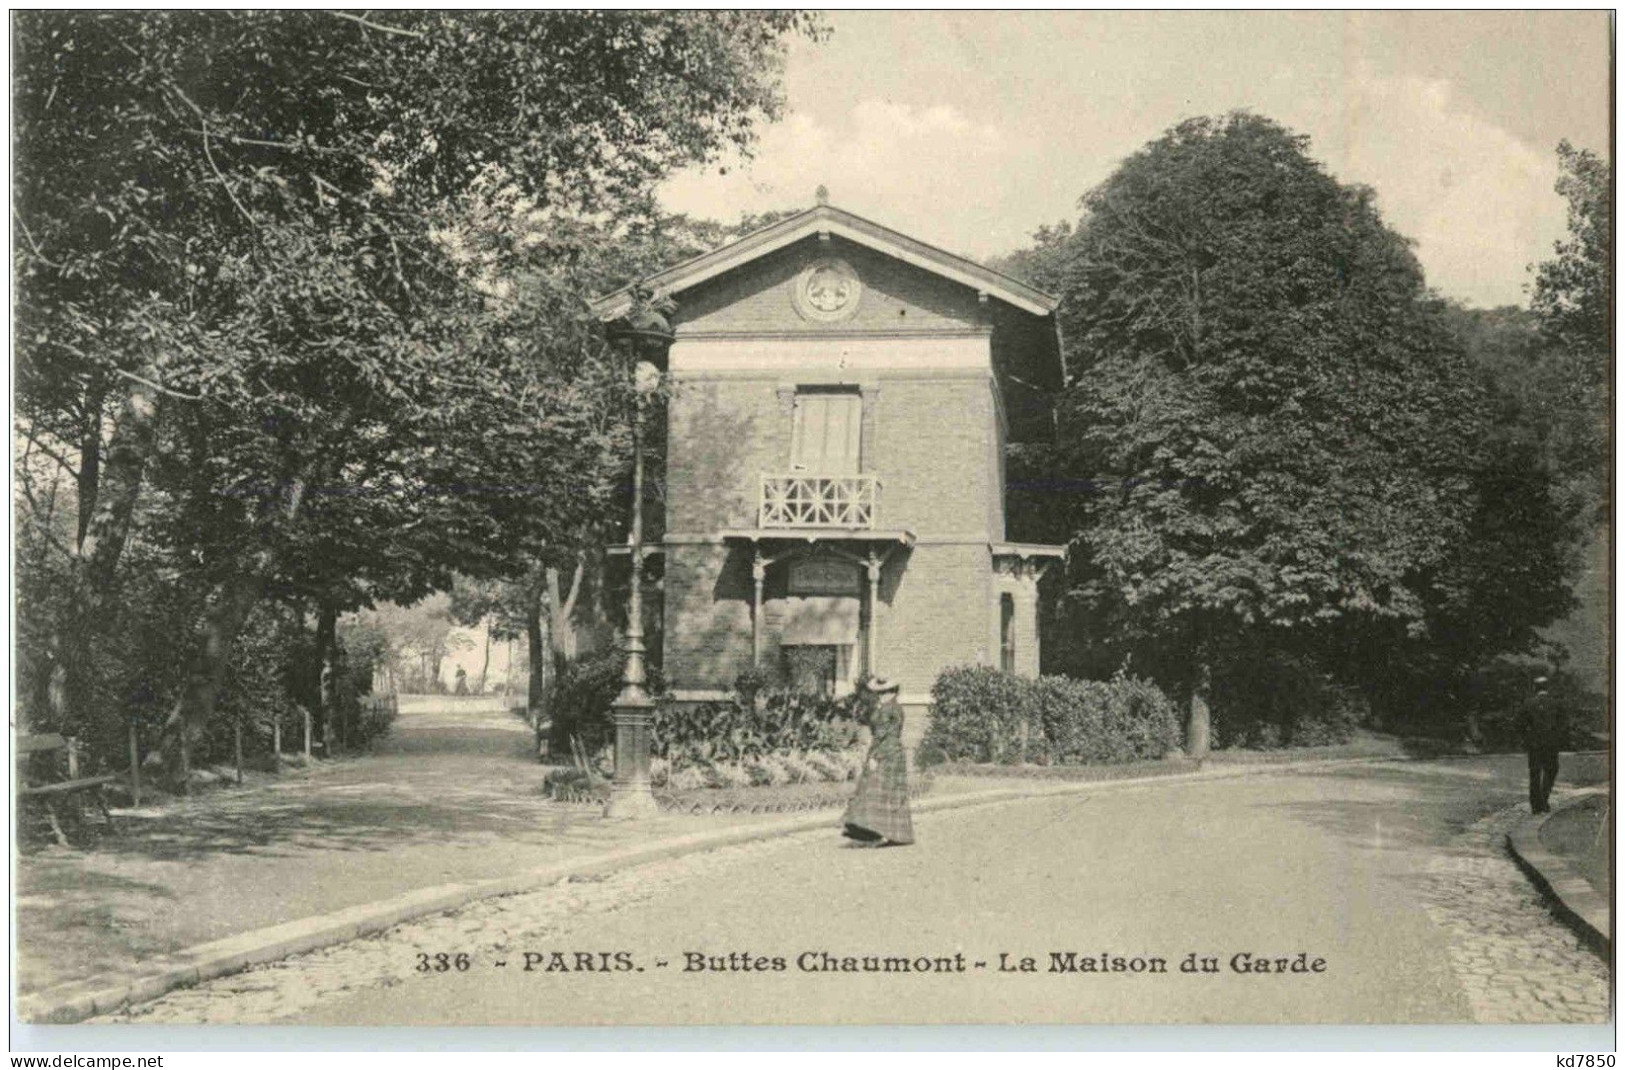 Paris - Buttes Chaumont - District 19